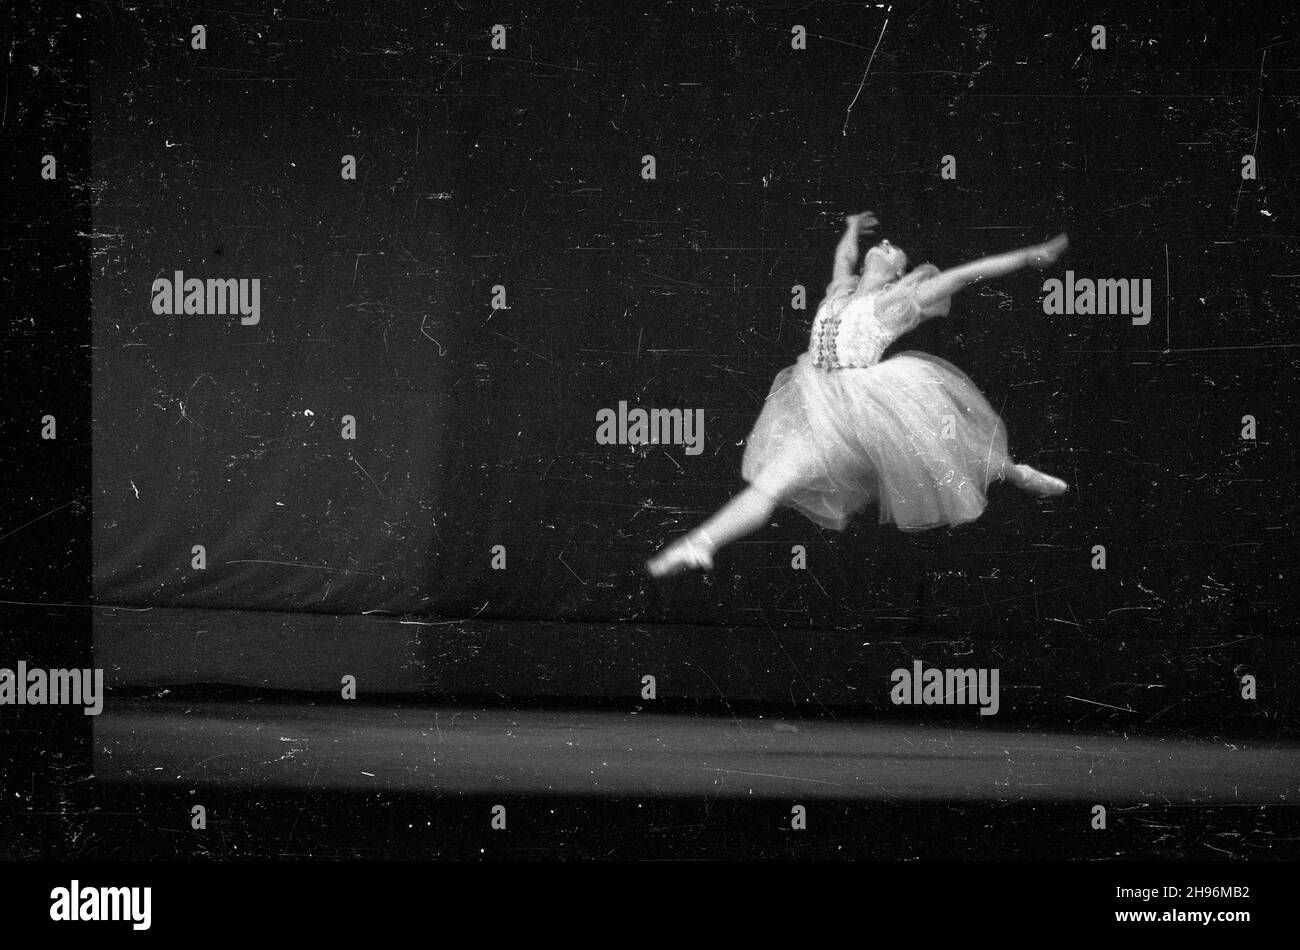 Warszawa, 1947-08-30. Wystêpy tancerzy radzieckich w Teatrze Wielkim. bb/mgs  PAP      Warsaw, Aug. 30, 1947. Performance of Soviet dancers in the Grand Theatre.   bb/mgs  PAP Stock Photo